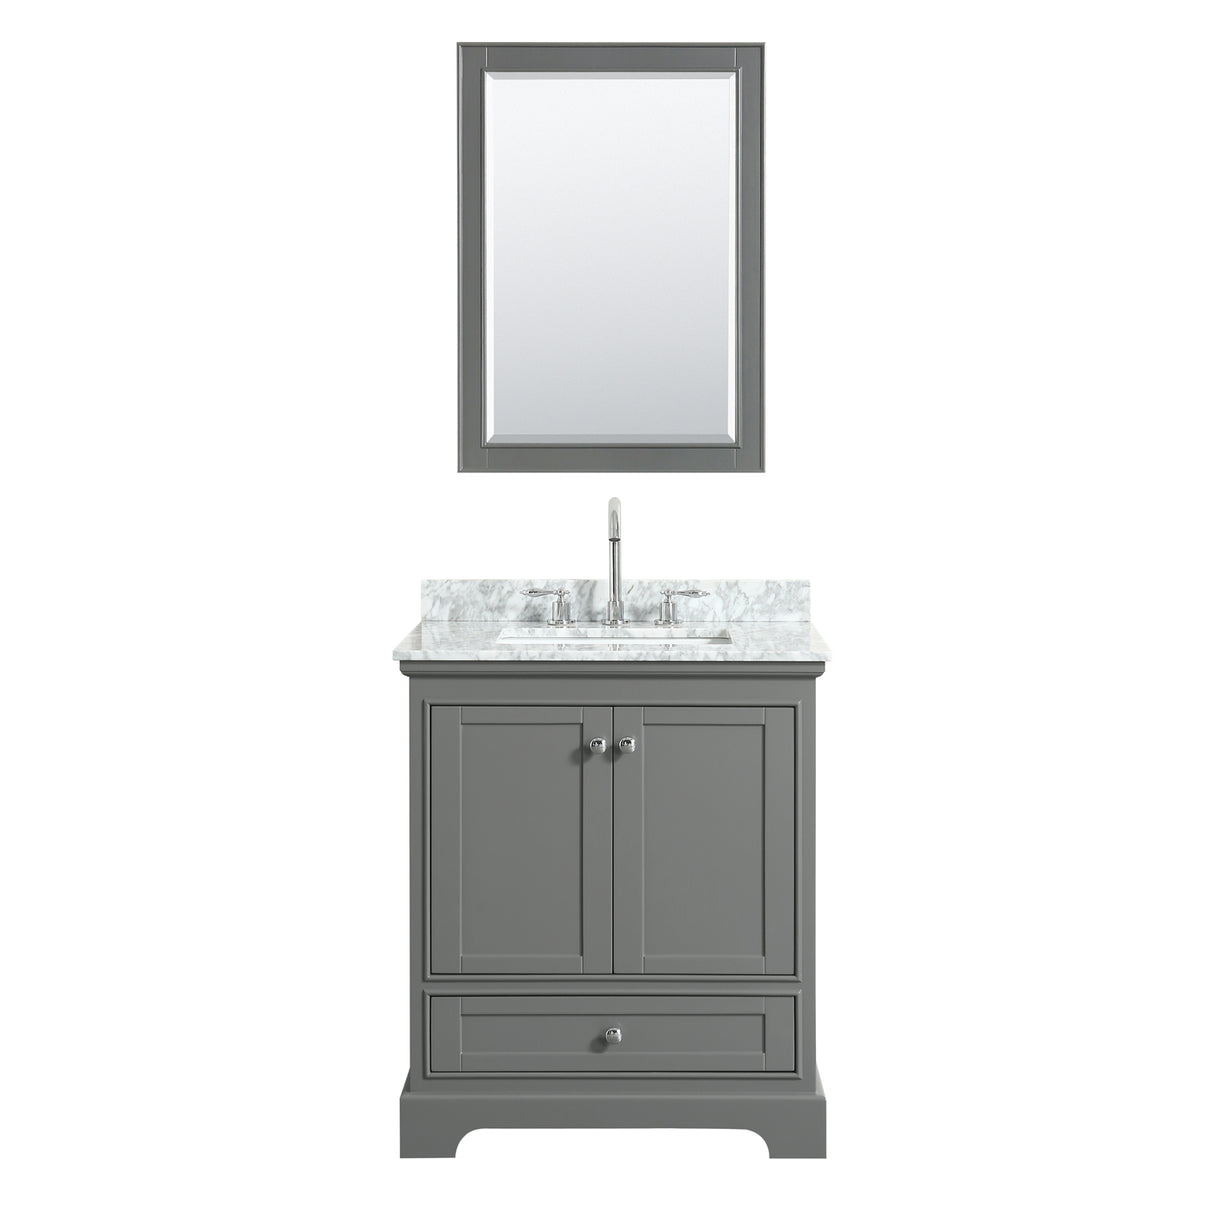 Deborah 30 Inch Single Bathroom Vanity in Dark Gray White Carrara Marble Countertop Undermount Square Sink and Medicine Cabinet